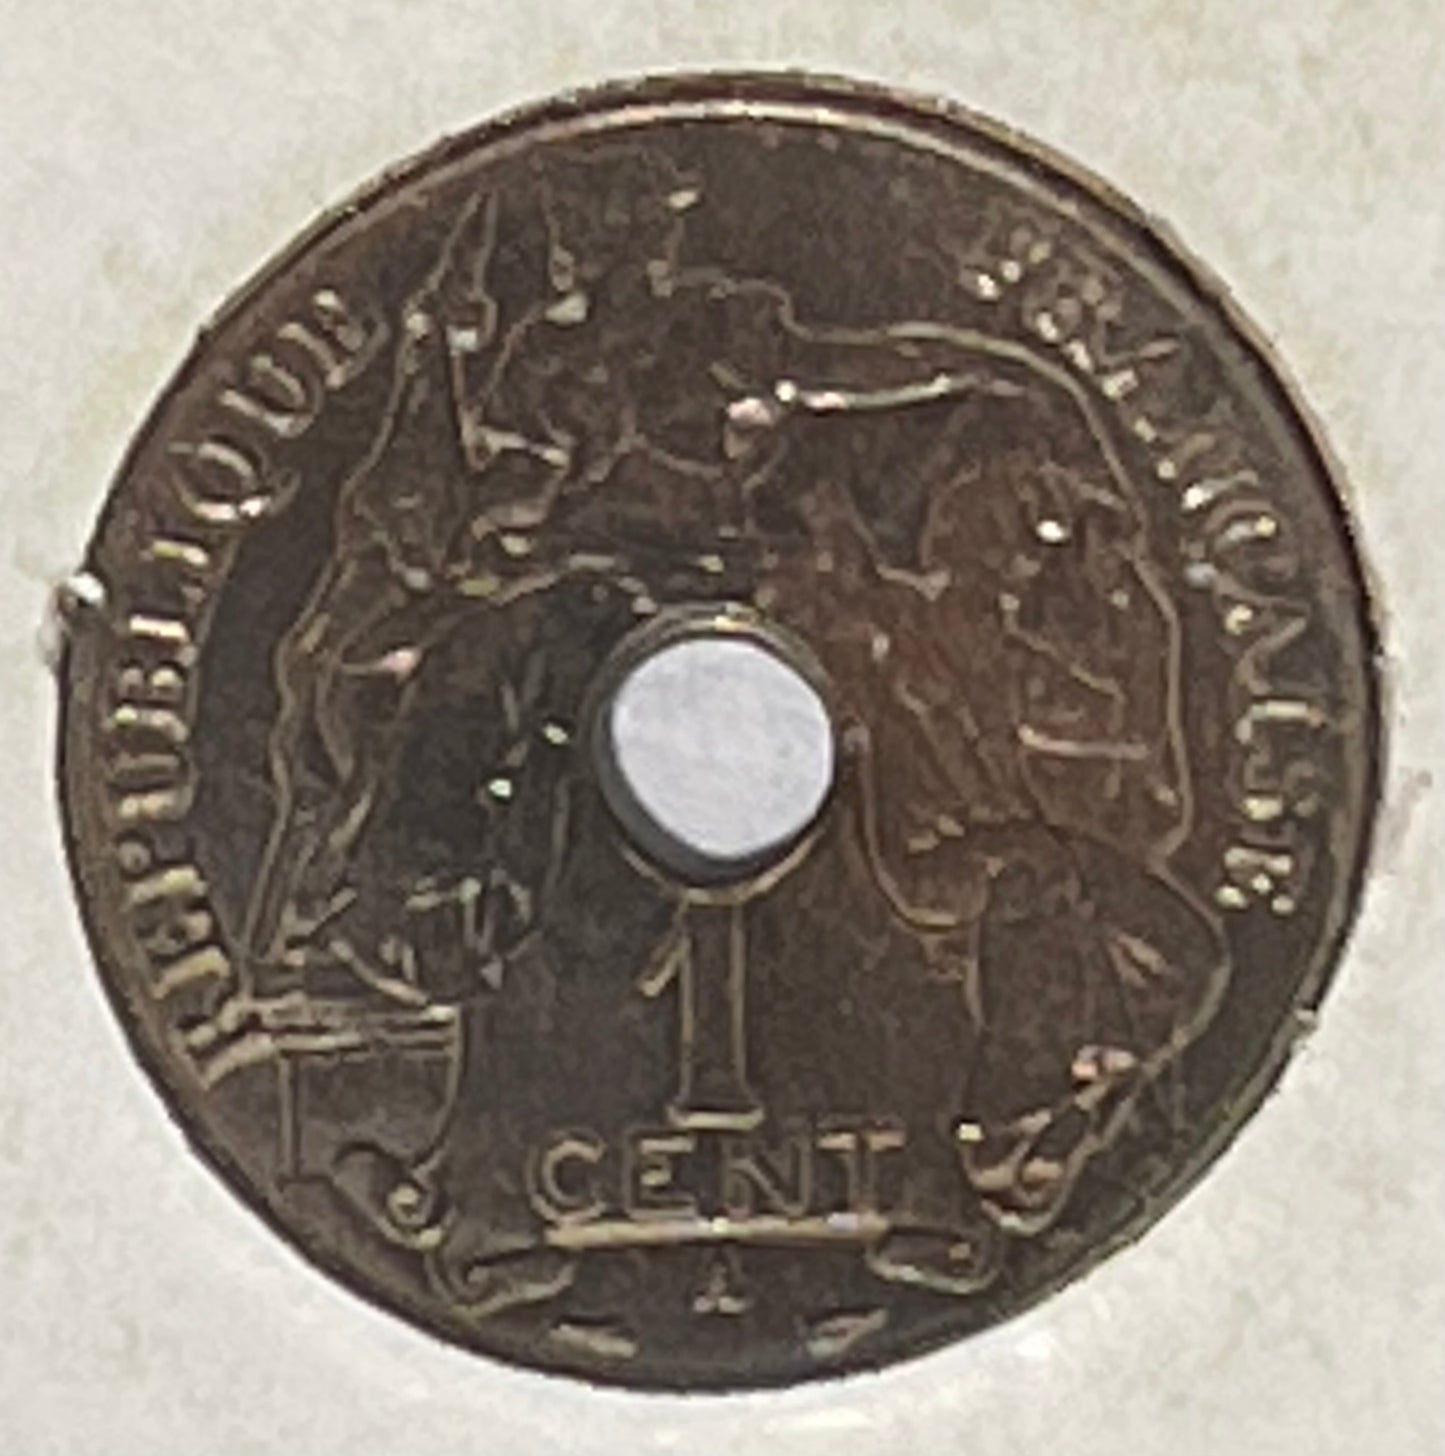 1939 Indo-Chine Francaise Republique Francaise Cent Bronze Coin